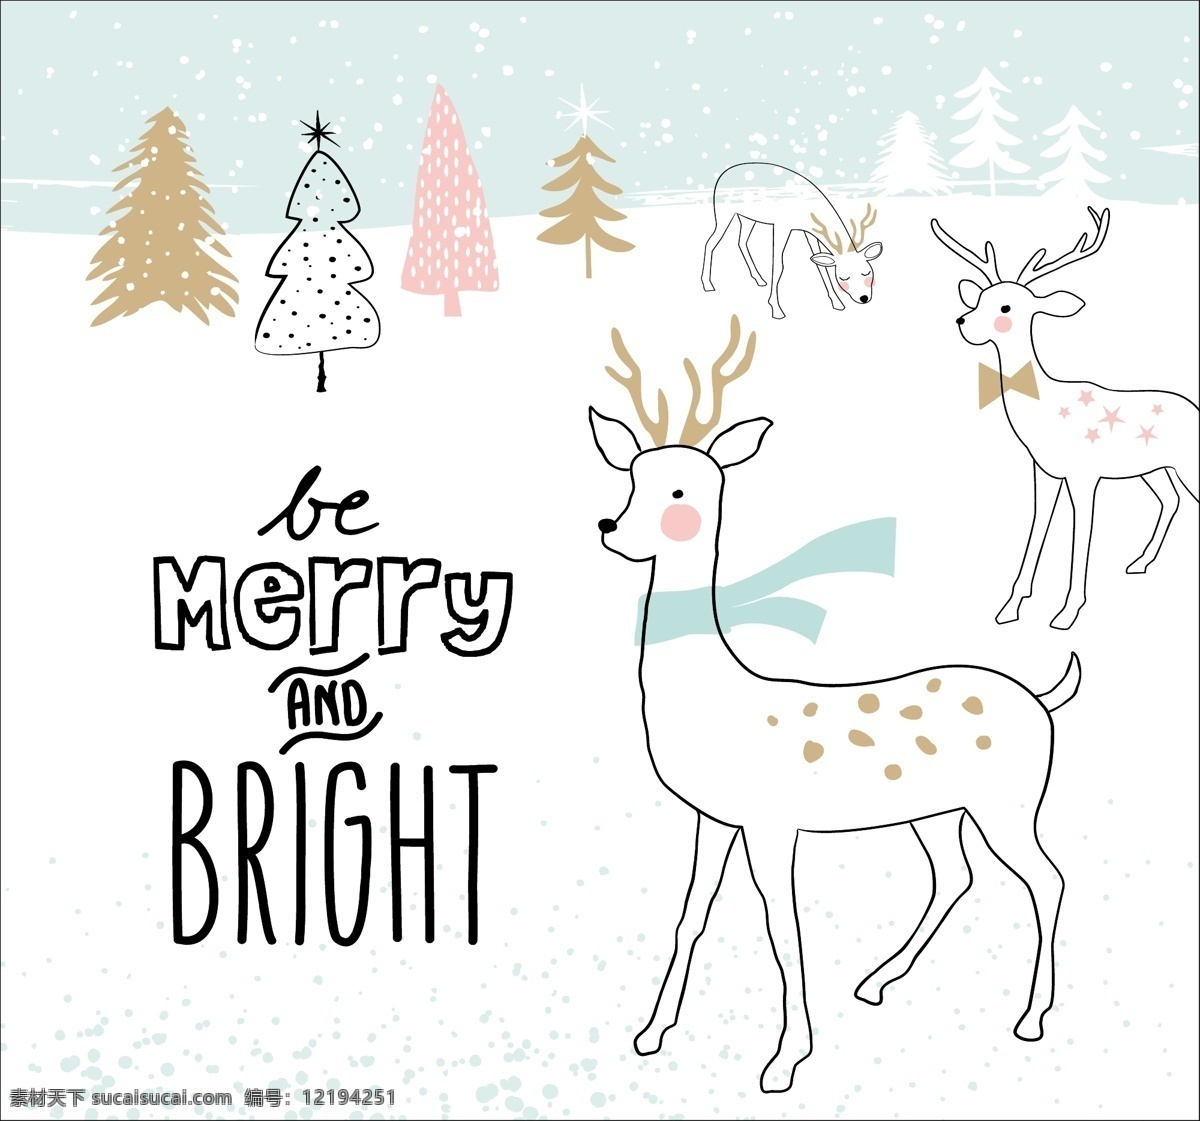 麋鹿 卡通 动物 线 稿 圣诞节 创意 卡片 矢量 金色 节日祝福 贺卡 企鹅 冬天 圣诞 可爱 热闹